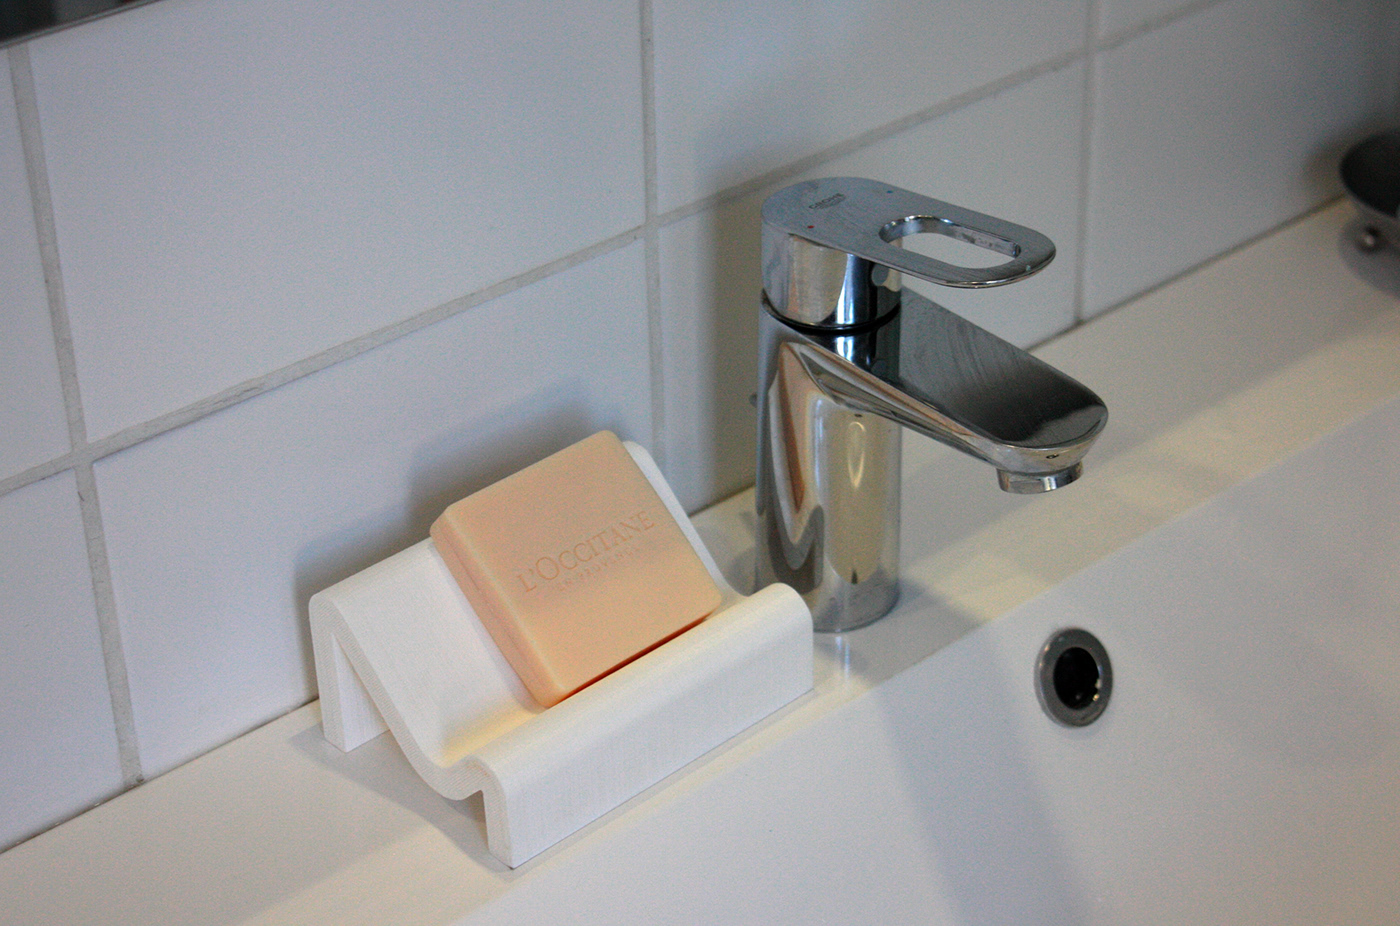 3D 3d print 3D Printer bathroom design dish PLA product design  soap soap dish